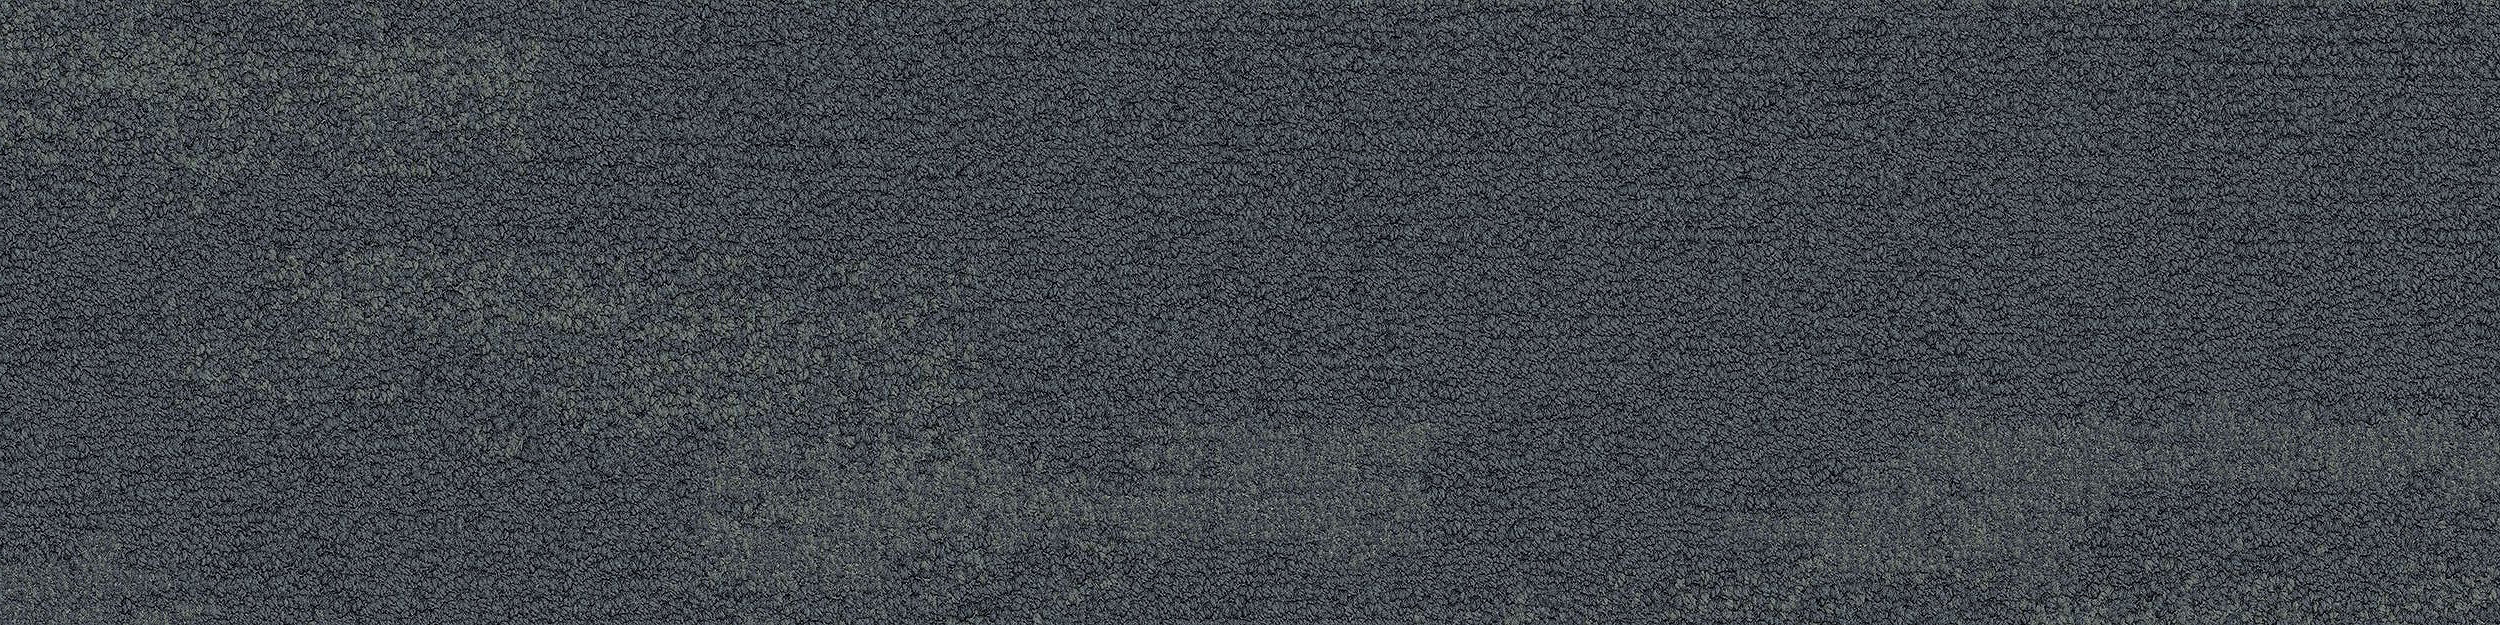 NF401 Carpet Tile In Shale afbeeldingnummer 10